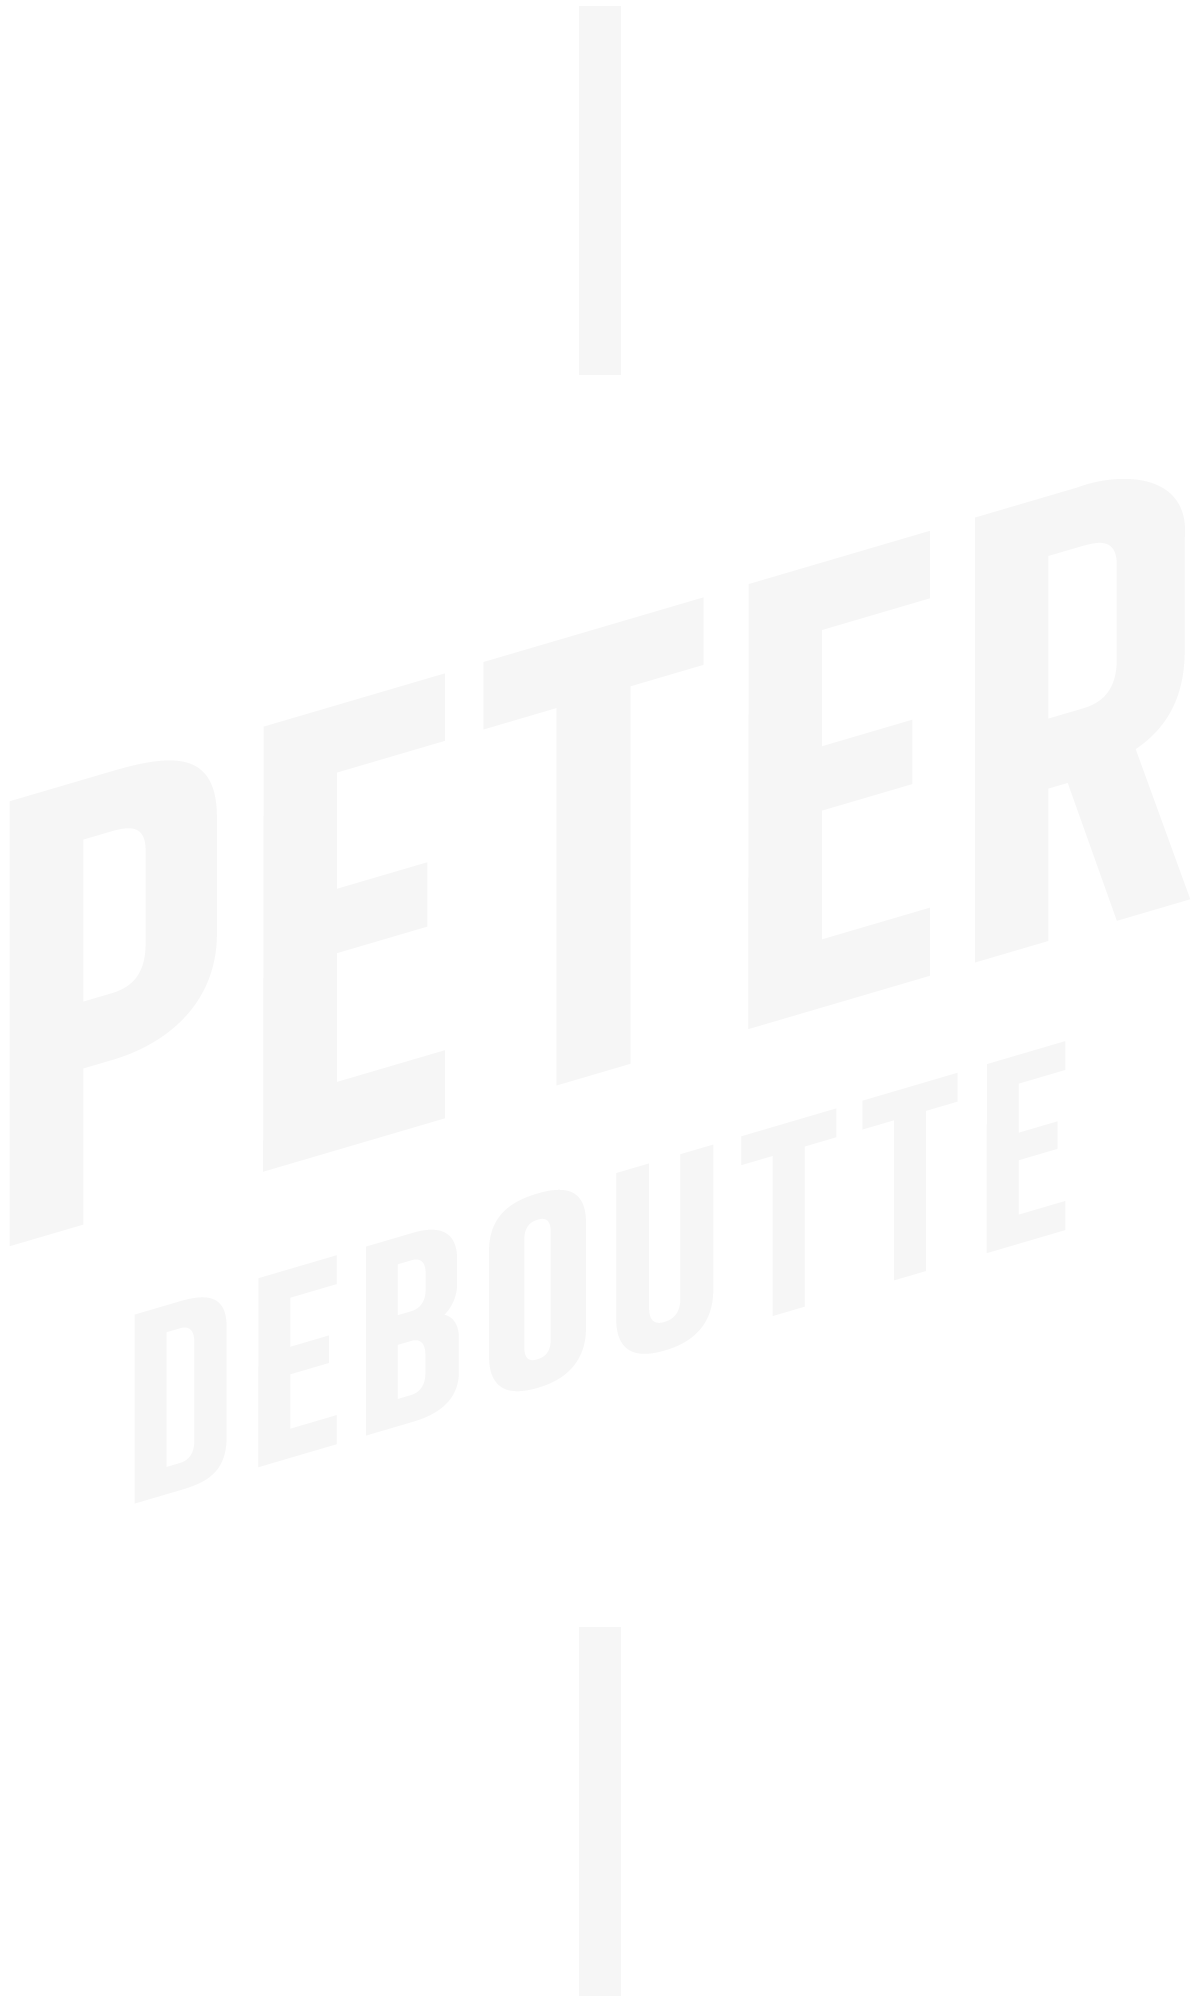 Peter Deboutte Prepare and Prevent